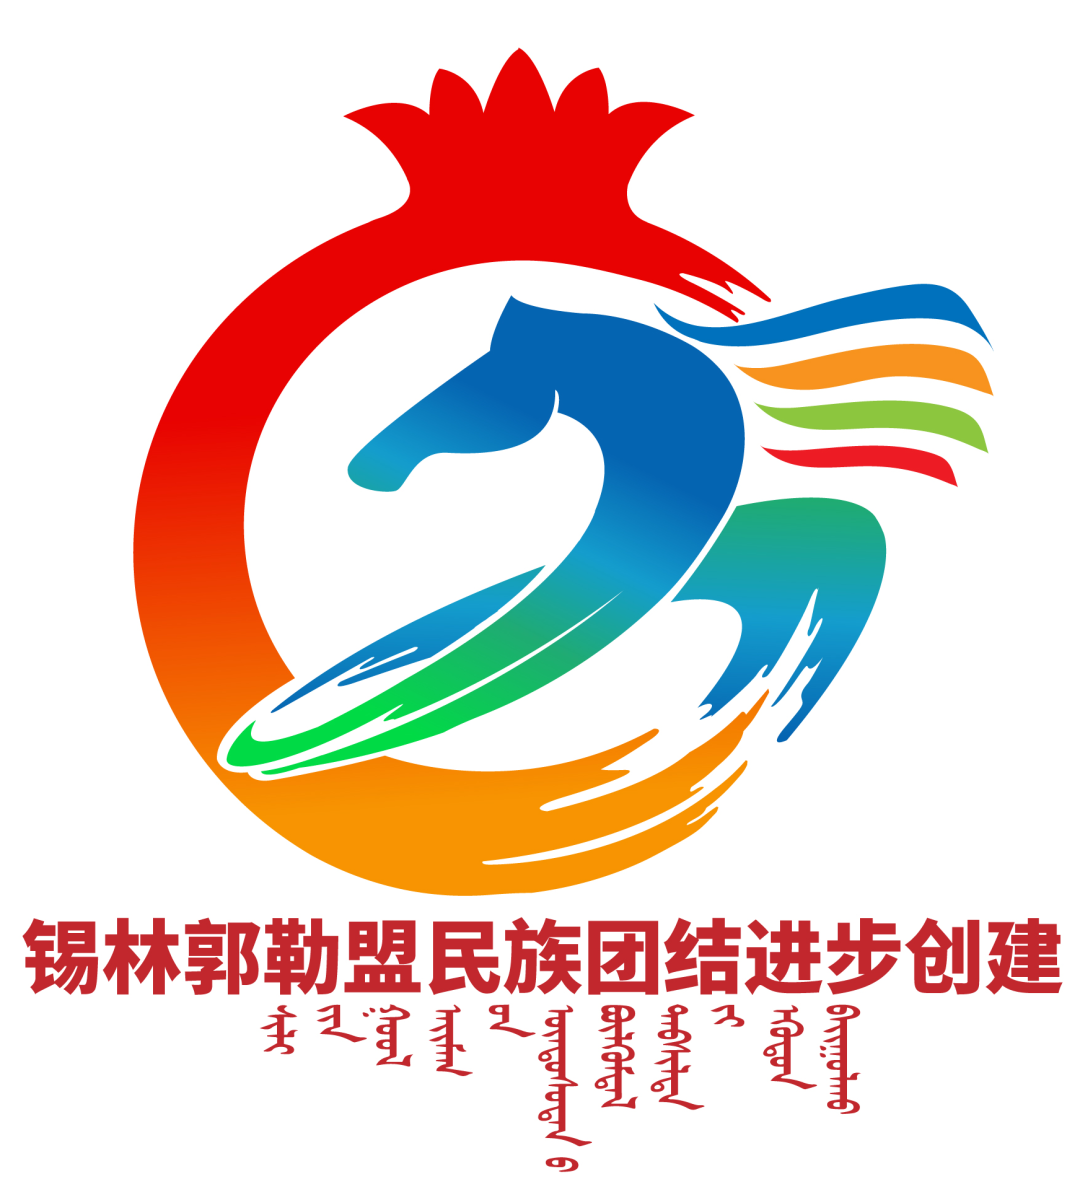 锡林郭勒盟民族团结进步创建标识（logo）征集评选结果公示